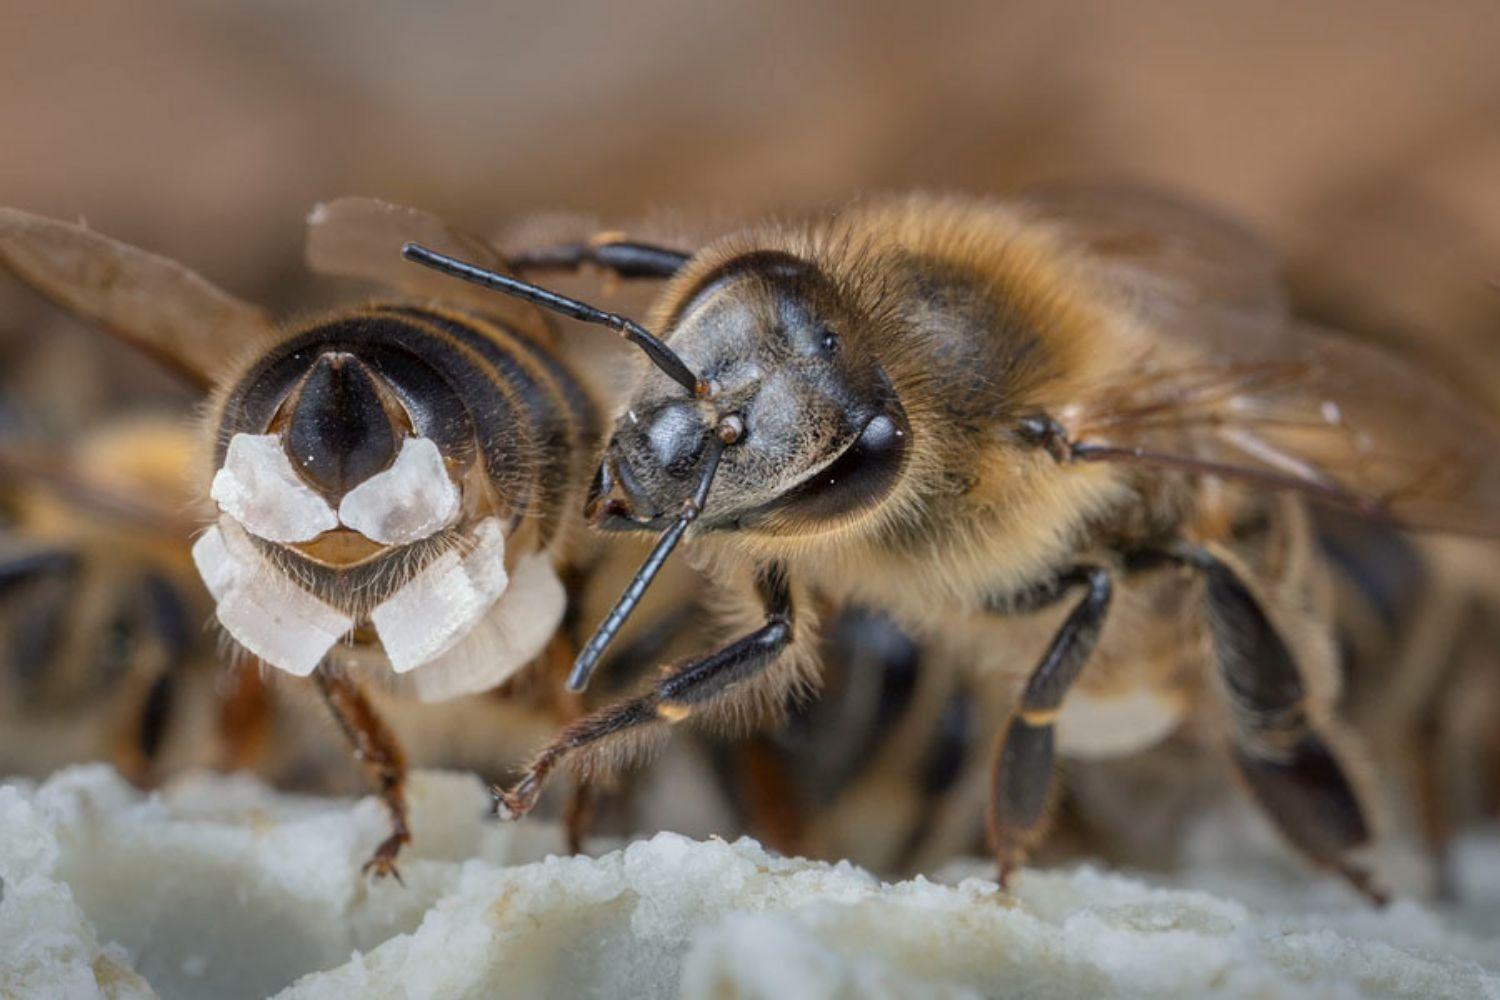 Honig und Wachs - Wie machen die Bienen das? 